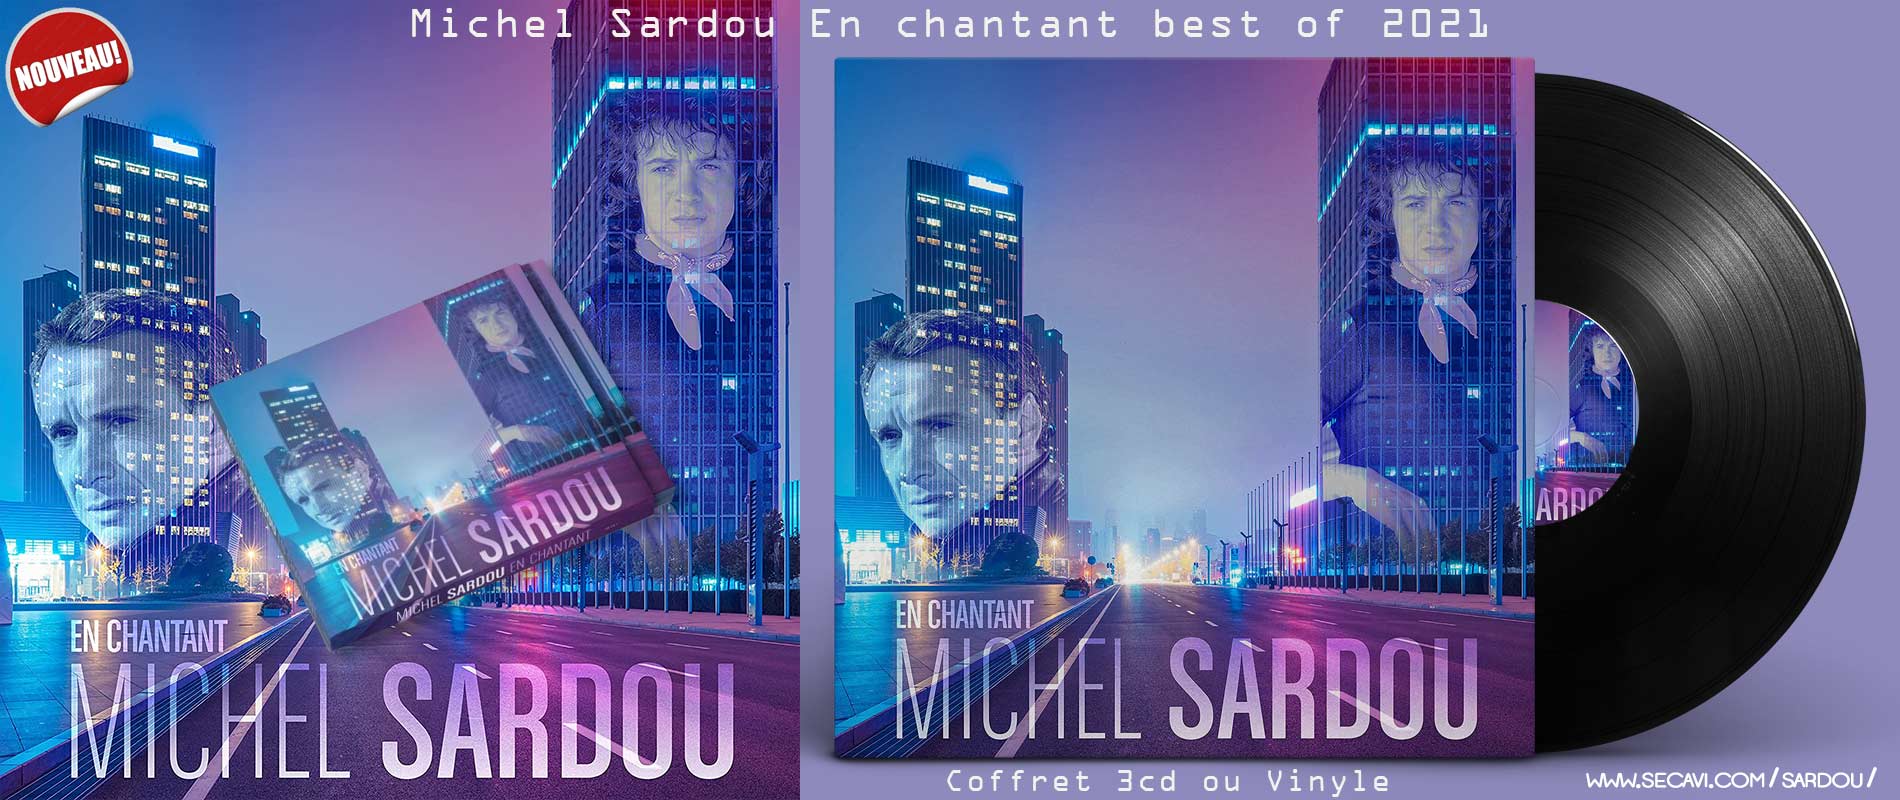 Michel Sardou best of